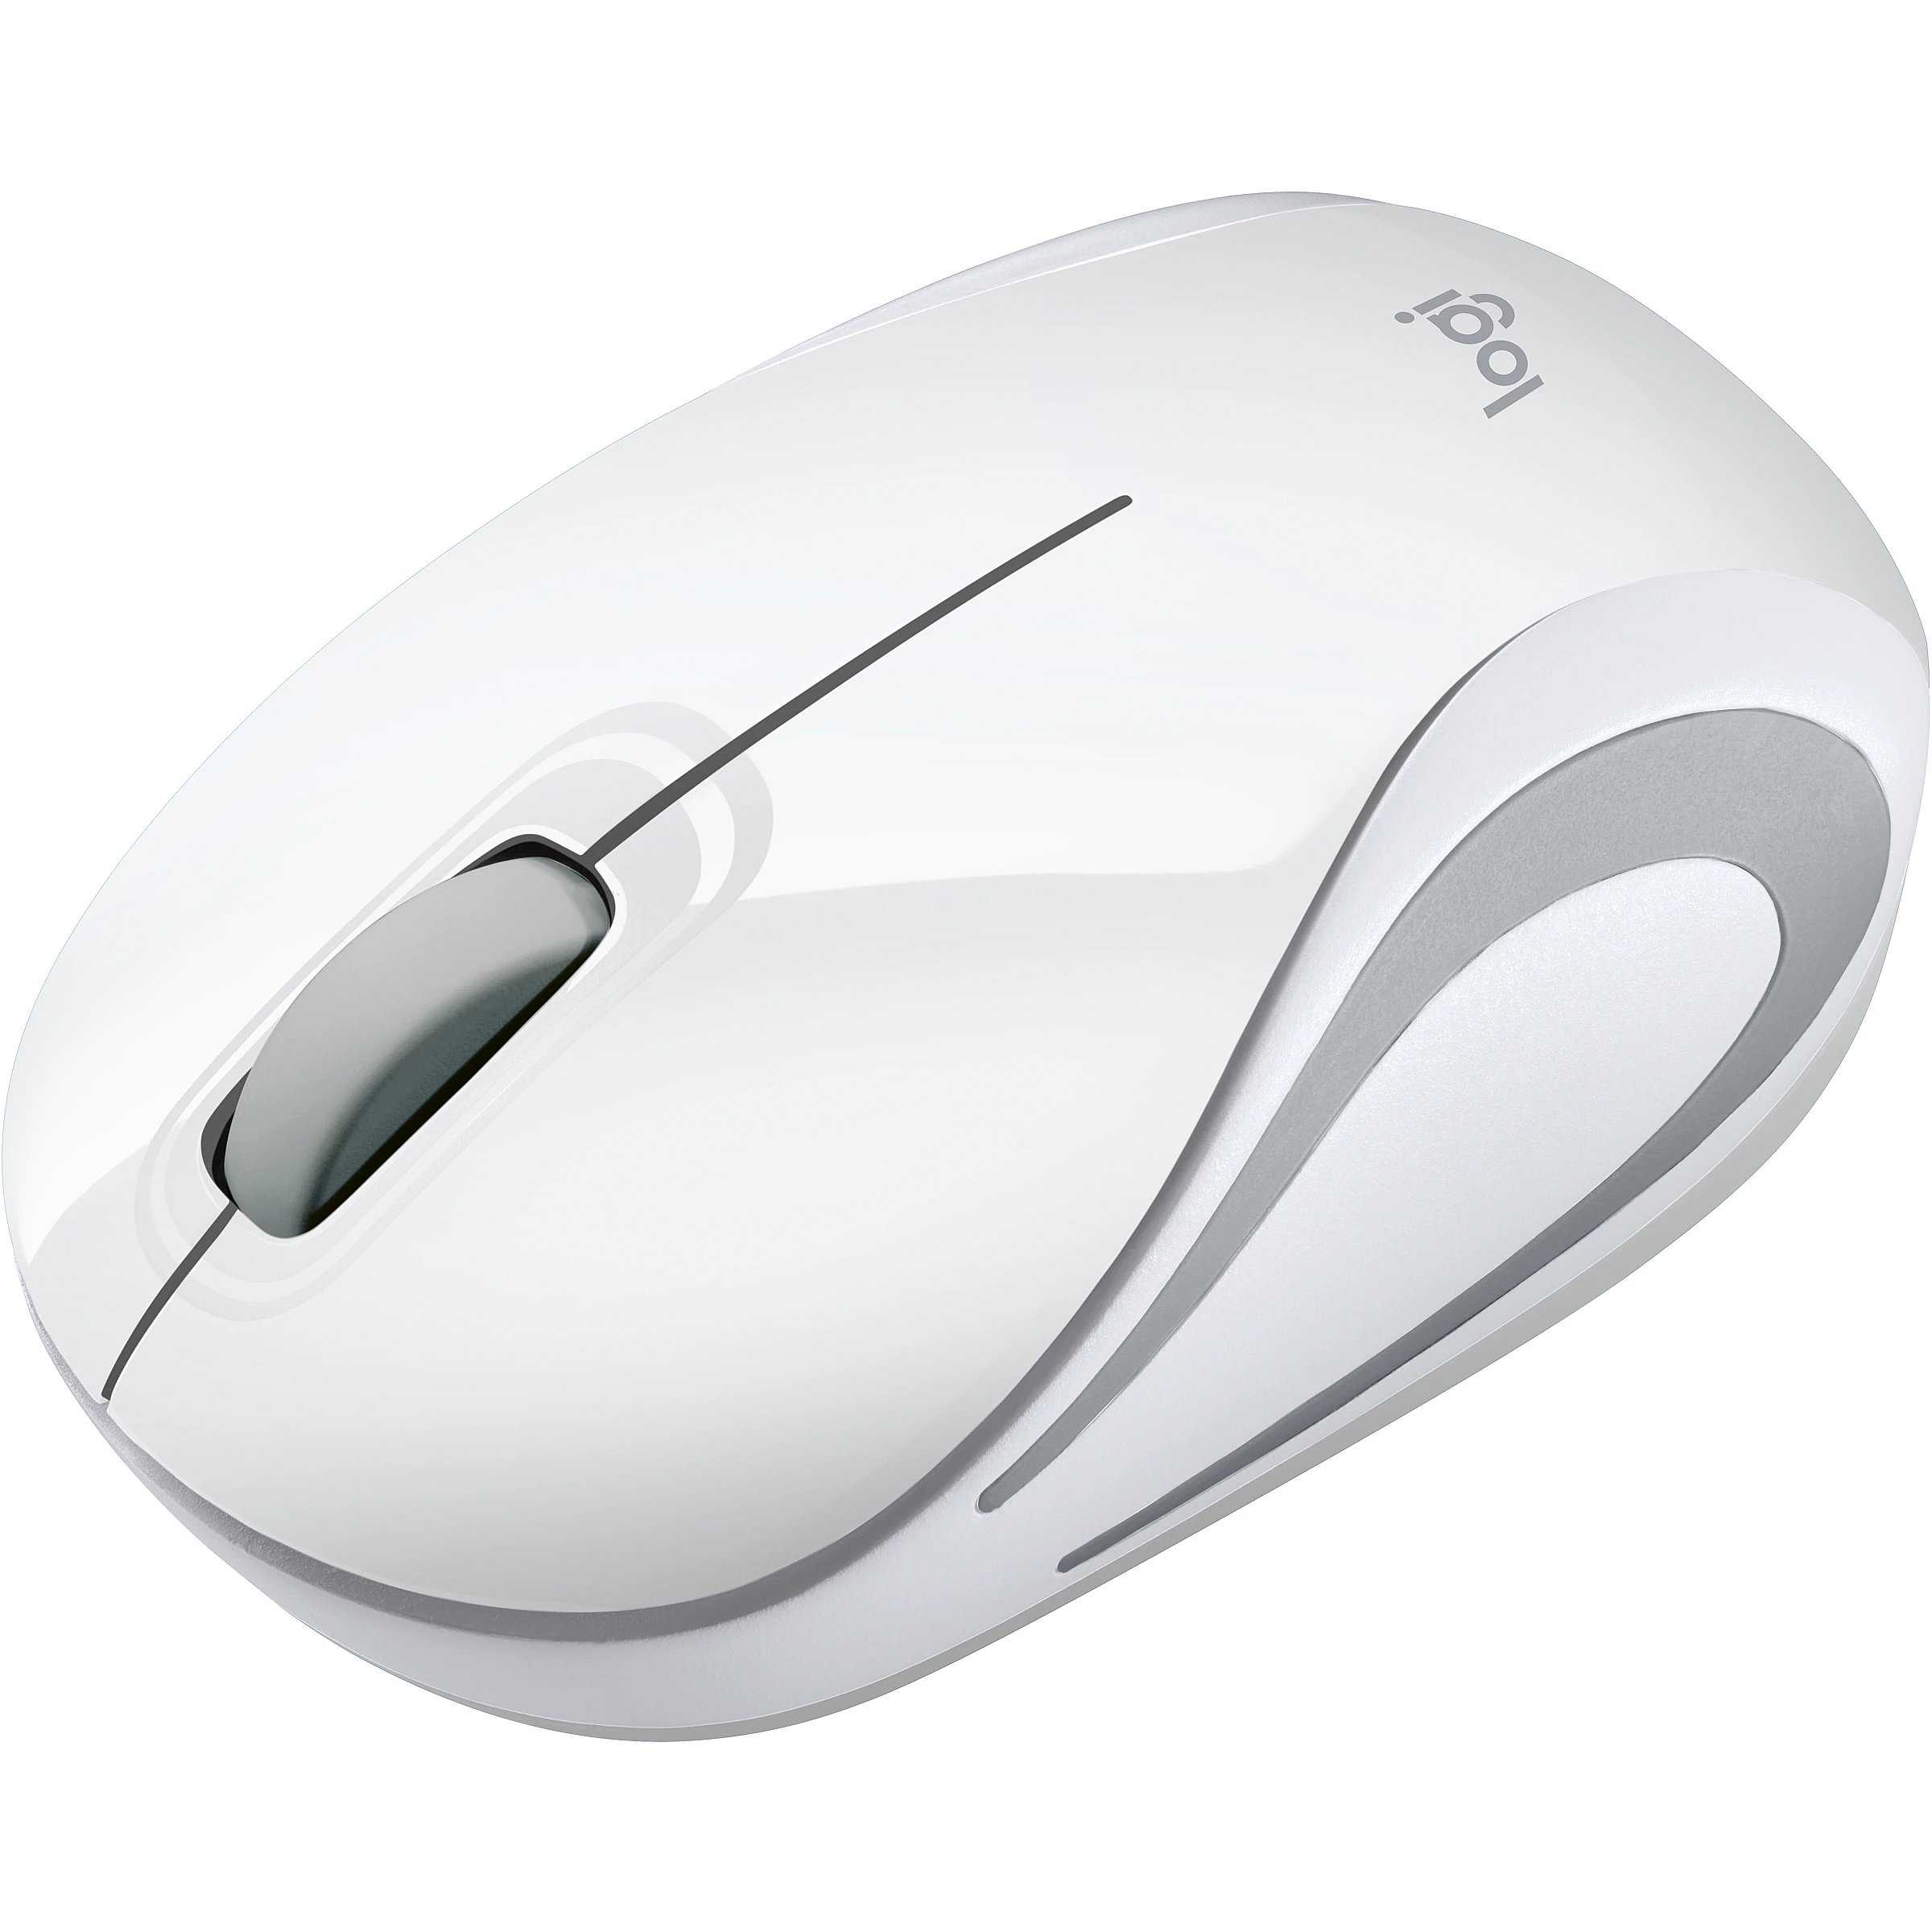 Logitech wireless mini mouse m187 white-silver usb